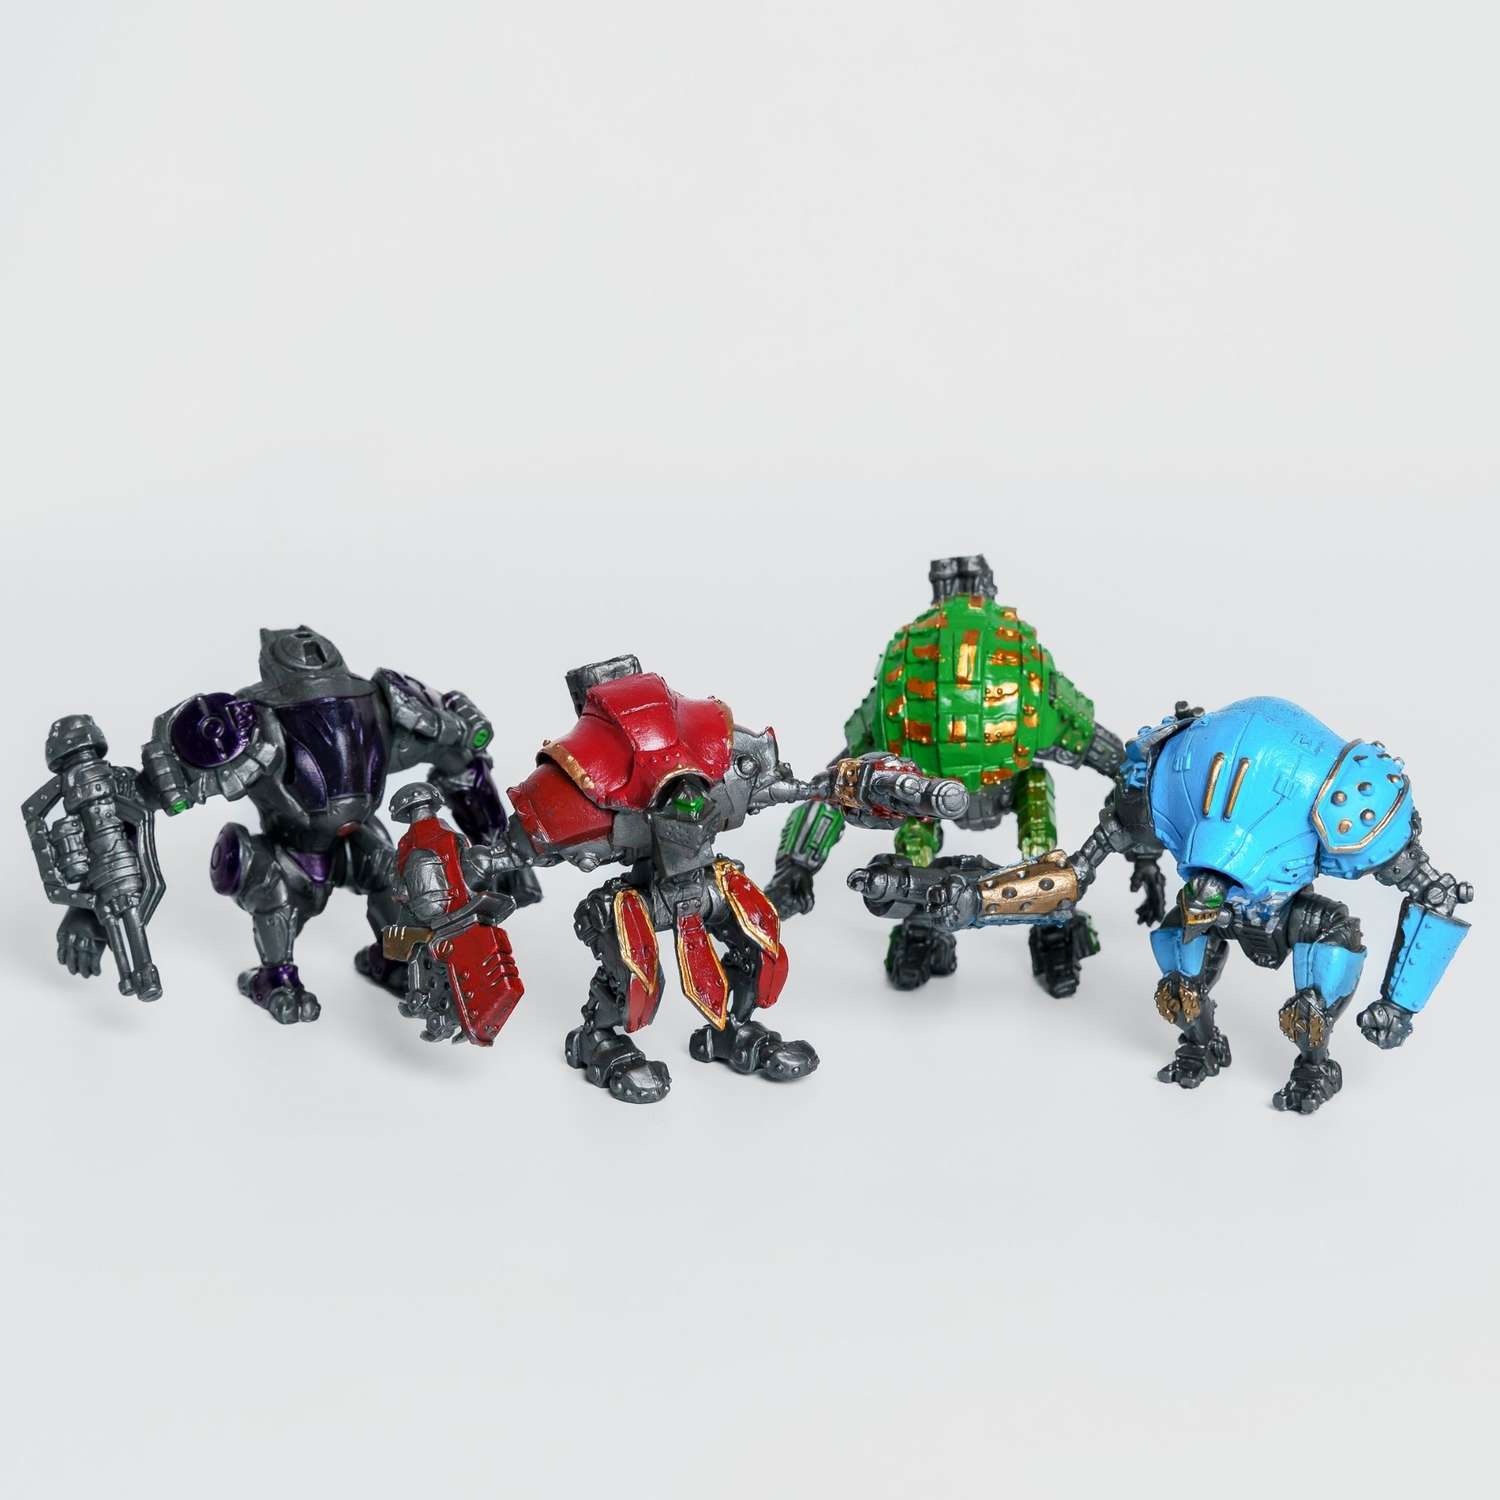 Роботы CyberCode 2 фигурки игрушки для детей развивающие пластиковые коллекционные интересные. 8см - фото 4